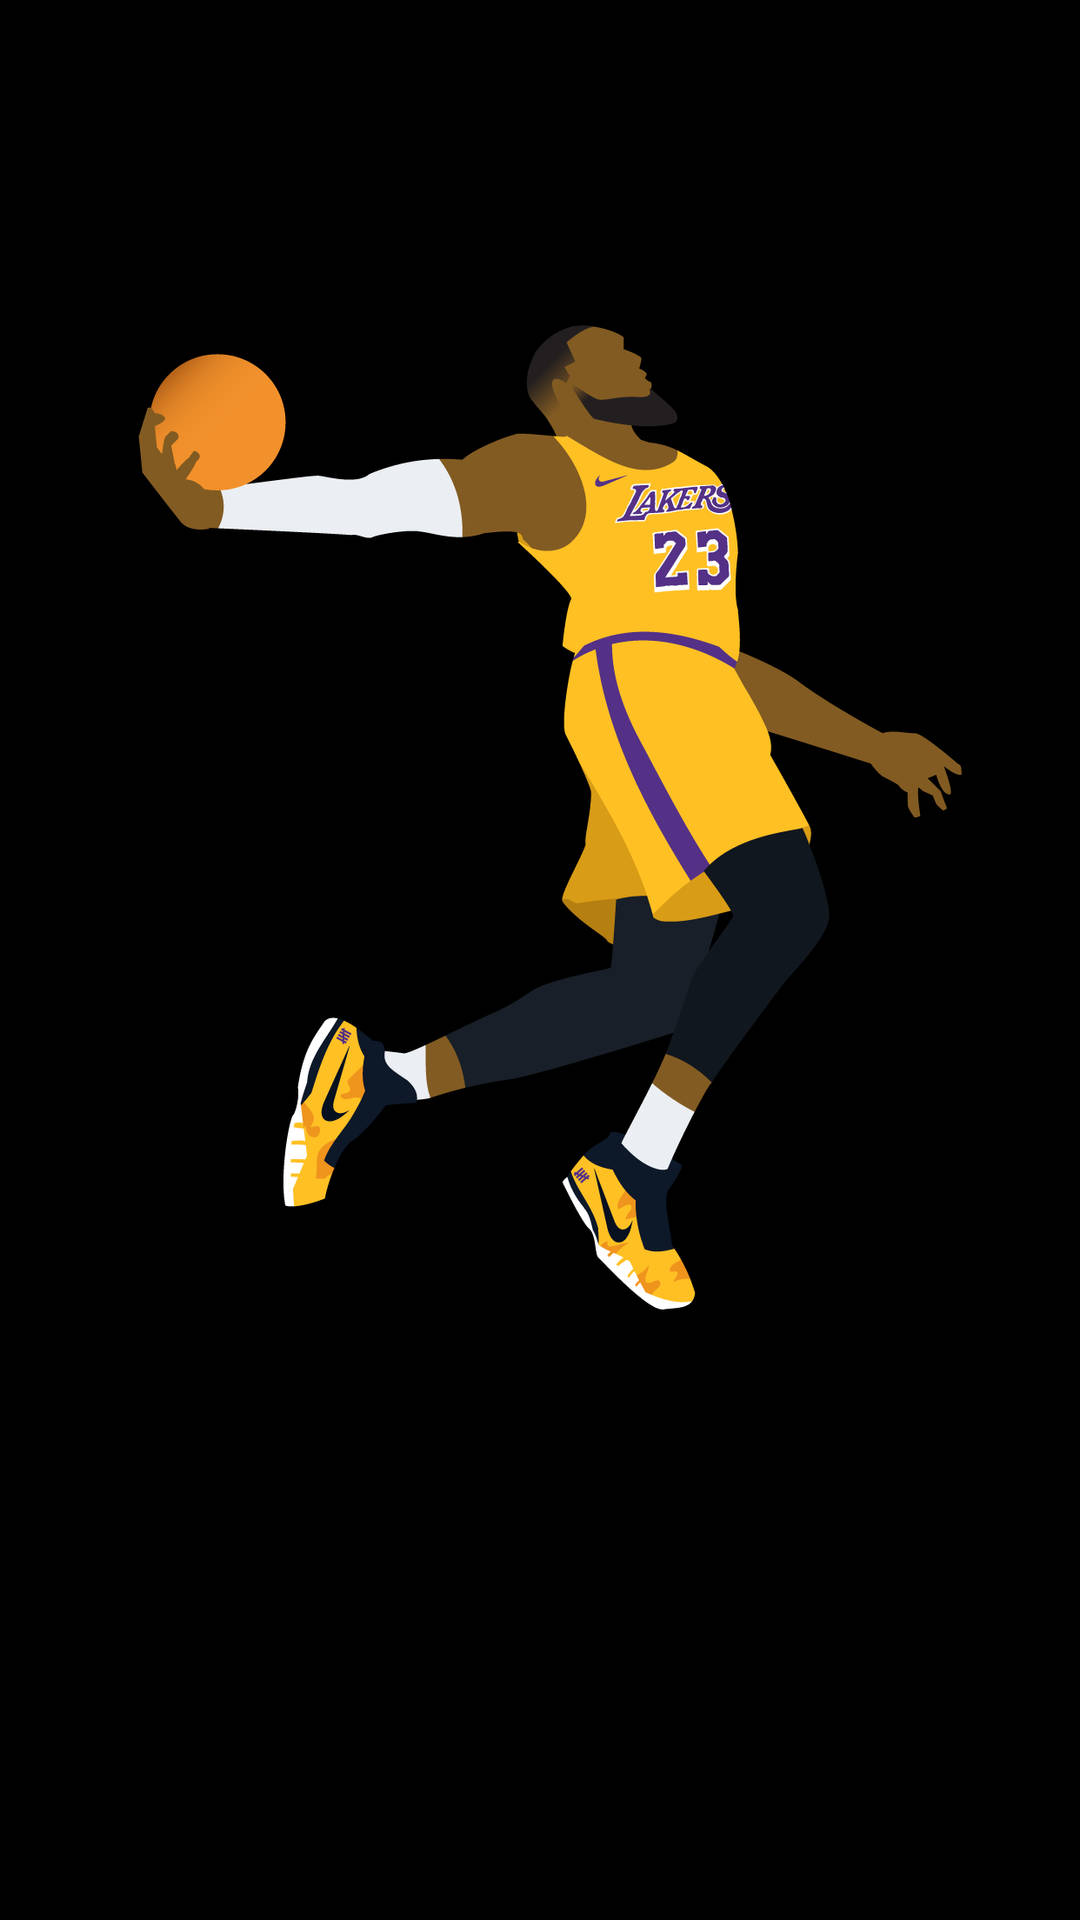 Zeigensie Ihren Lakers-stolz Mit Einem Offiziellen Lakers-iphone. Wallpaper